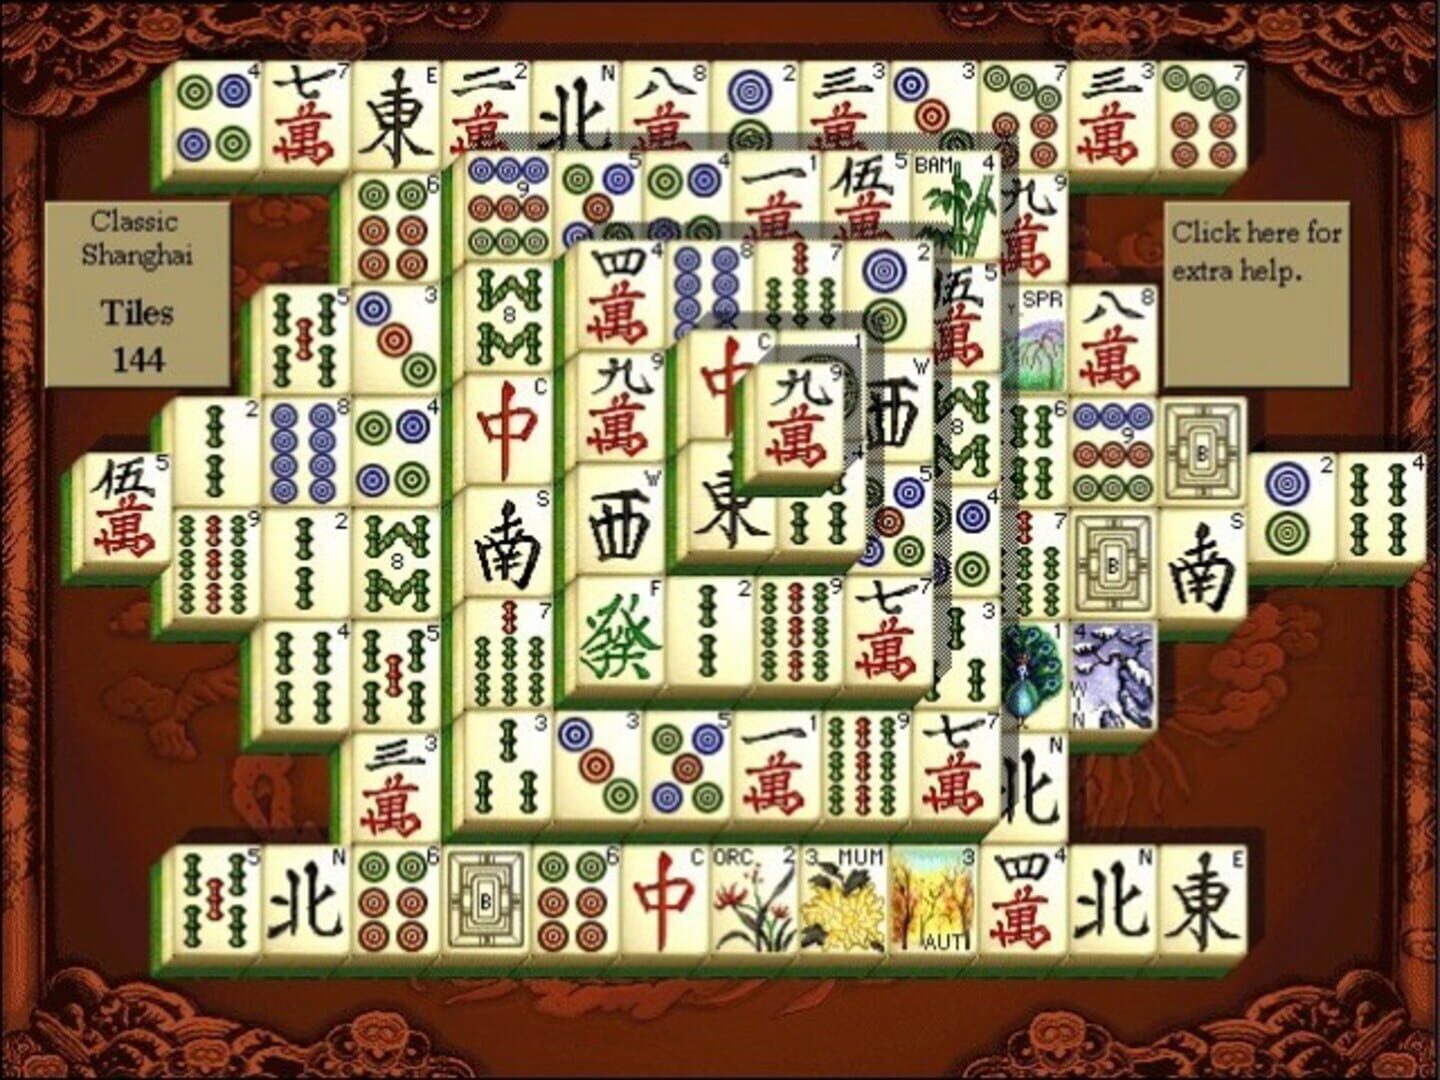 Игра Маджонг Шанхай. Microsoft Mahjong. Маджонг Шанхайская Династия во весь экран.